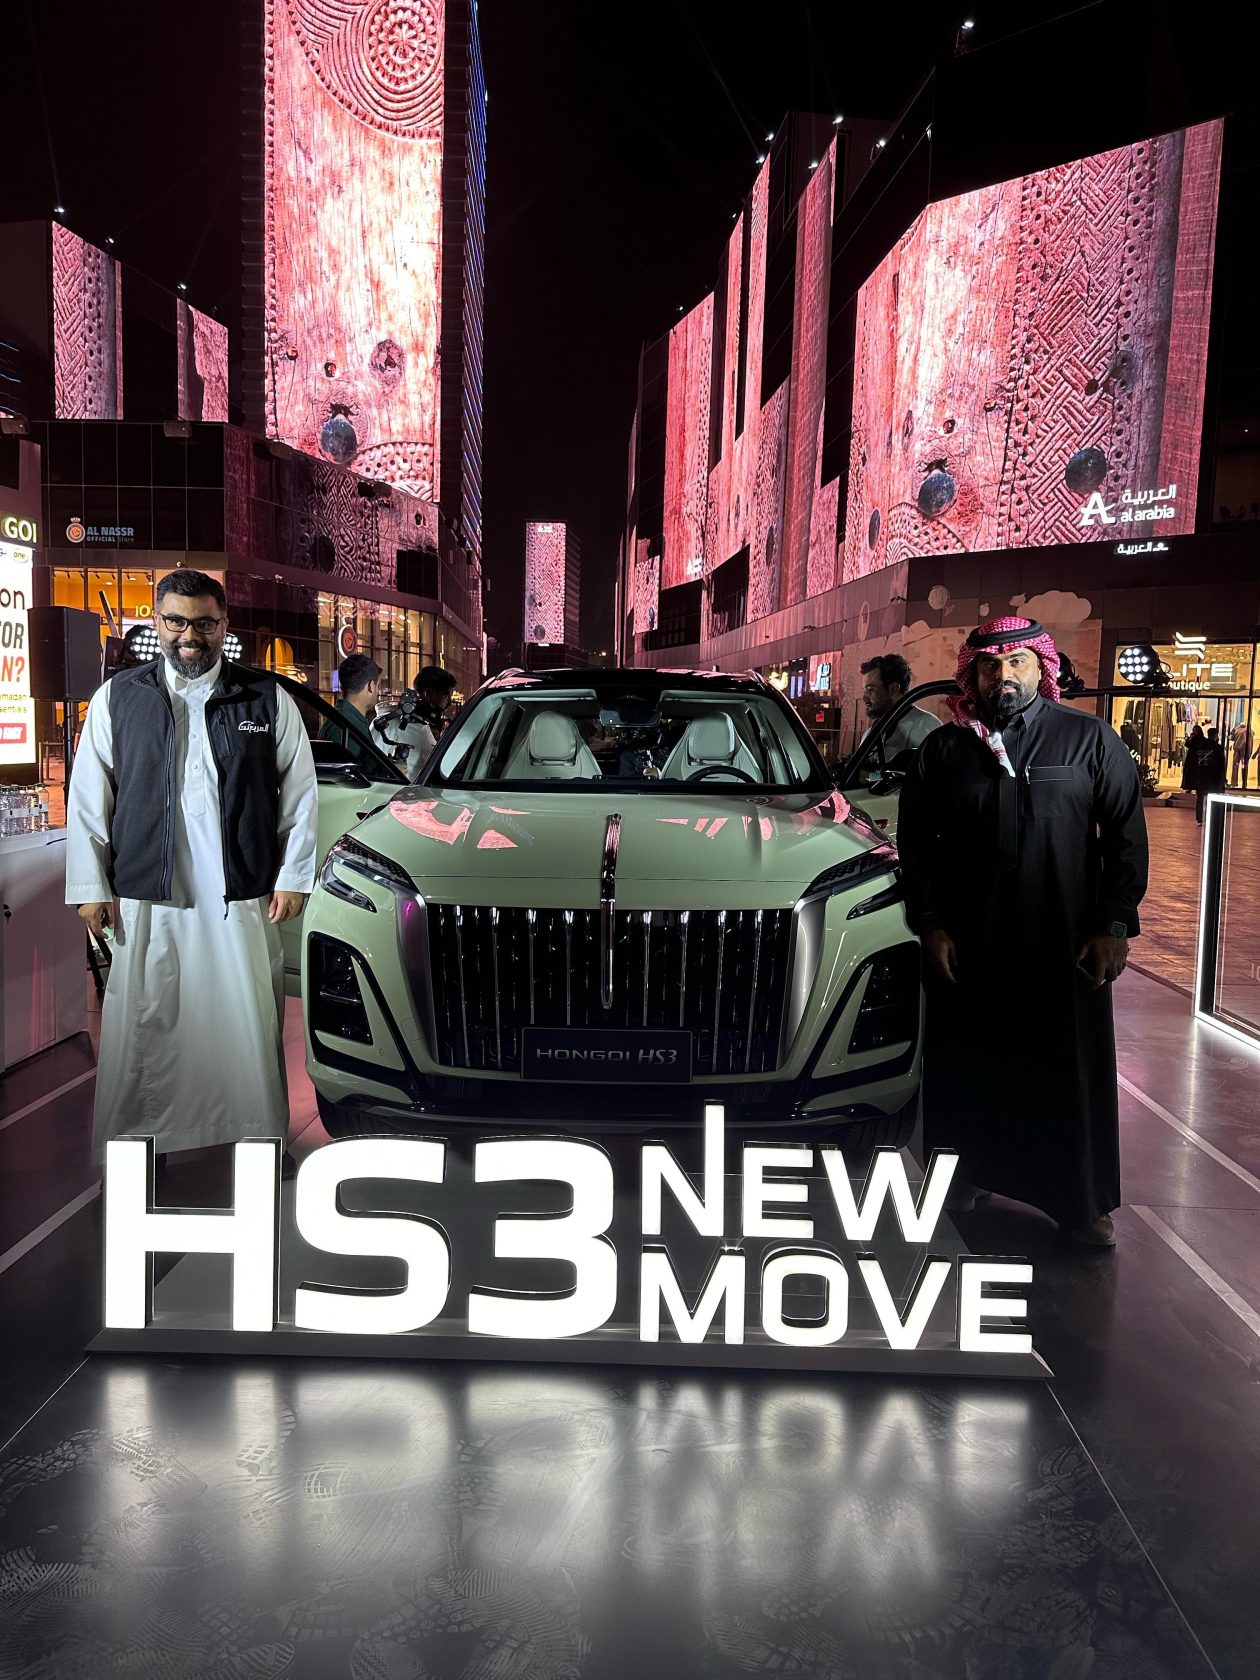 مع البيع المسبق لهونشي HS3 الجديدة بسعر يبدأ من 109,900 ريال؛ الشرق الأوسط يرحب بسيارة الدفع الرباعي الأقوى في فئتها 5